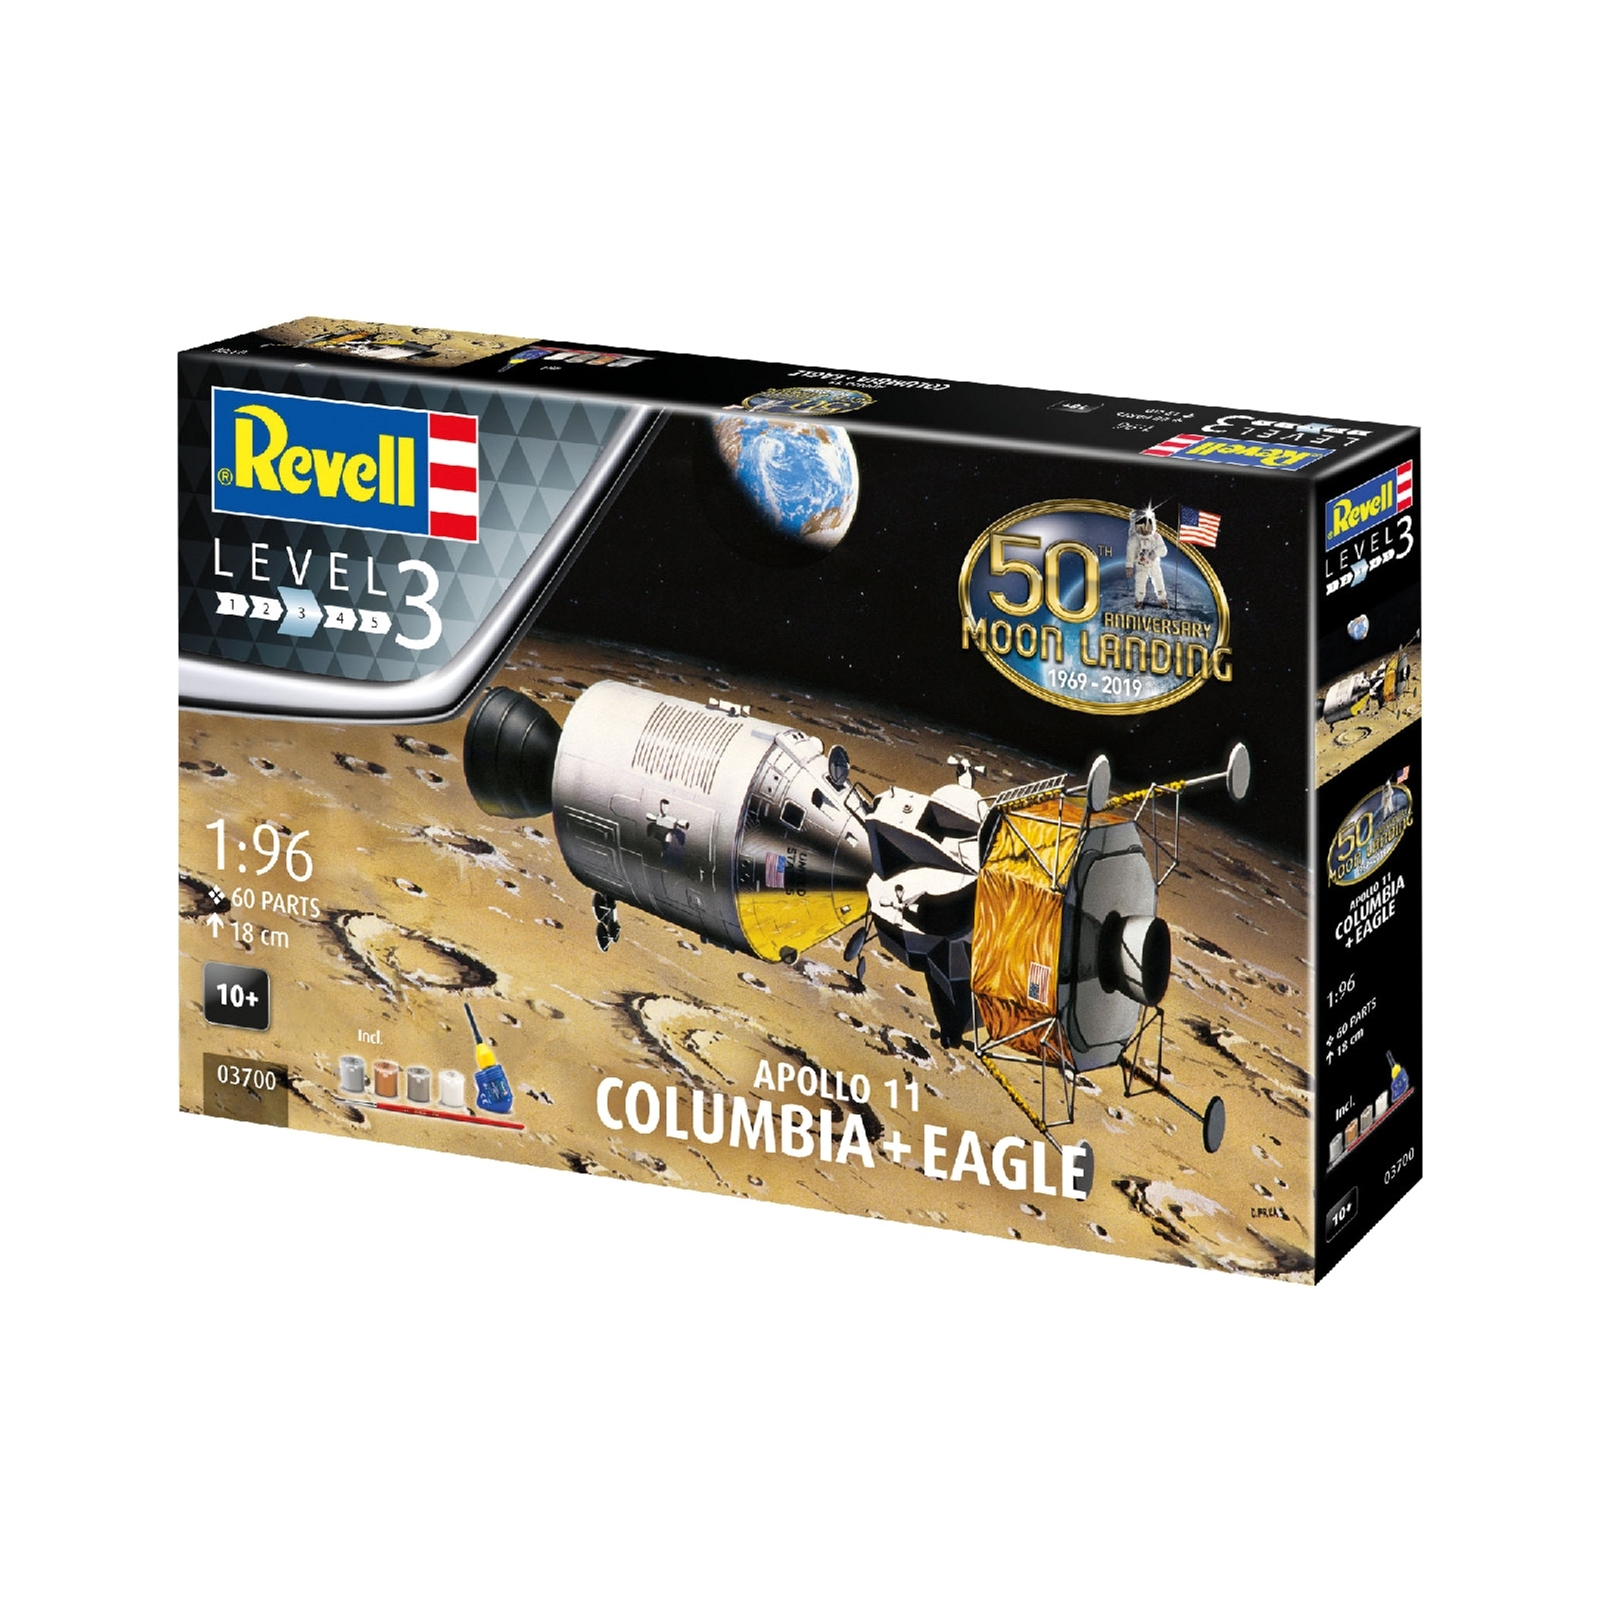 Сборная модель Revell Модули Колумбия и Орел миссии Аполлон 11 уровень 3, 1:96 (RVL-03700)